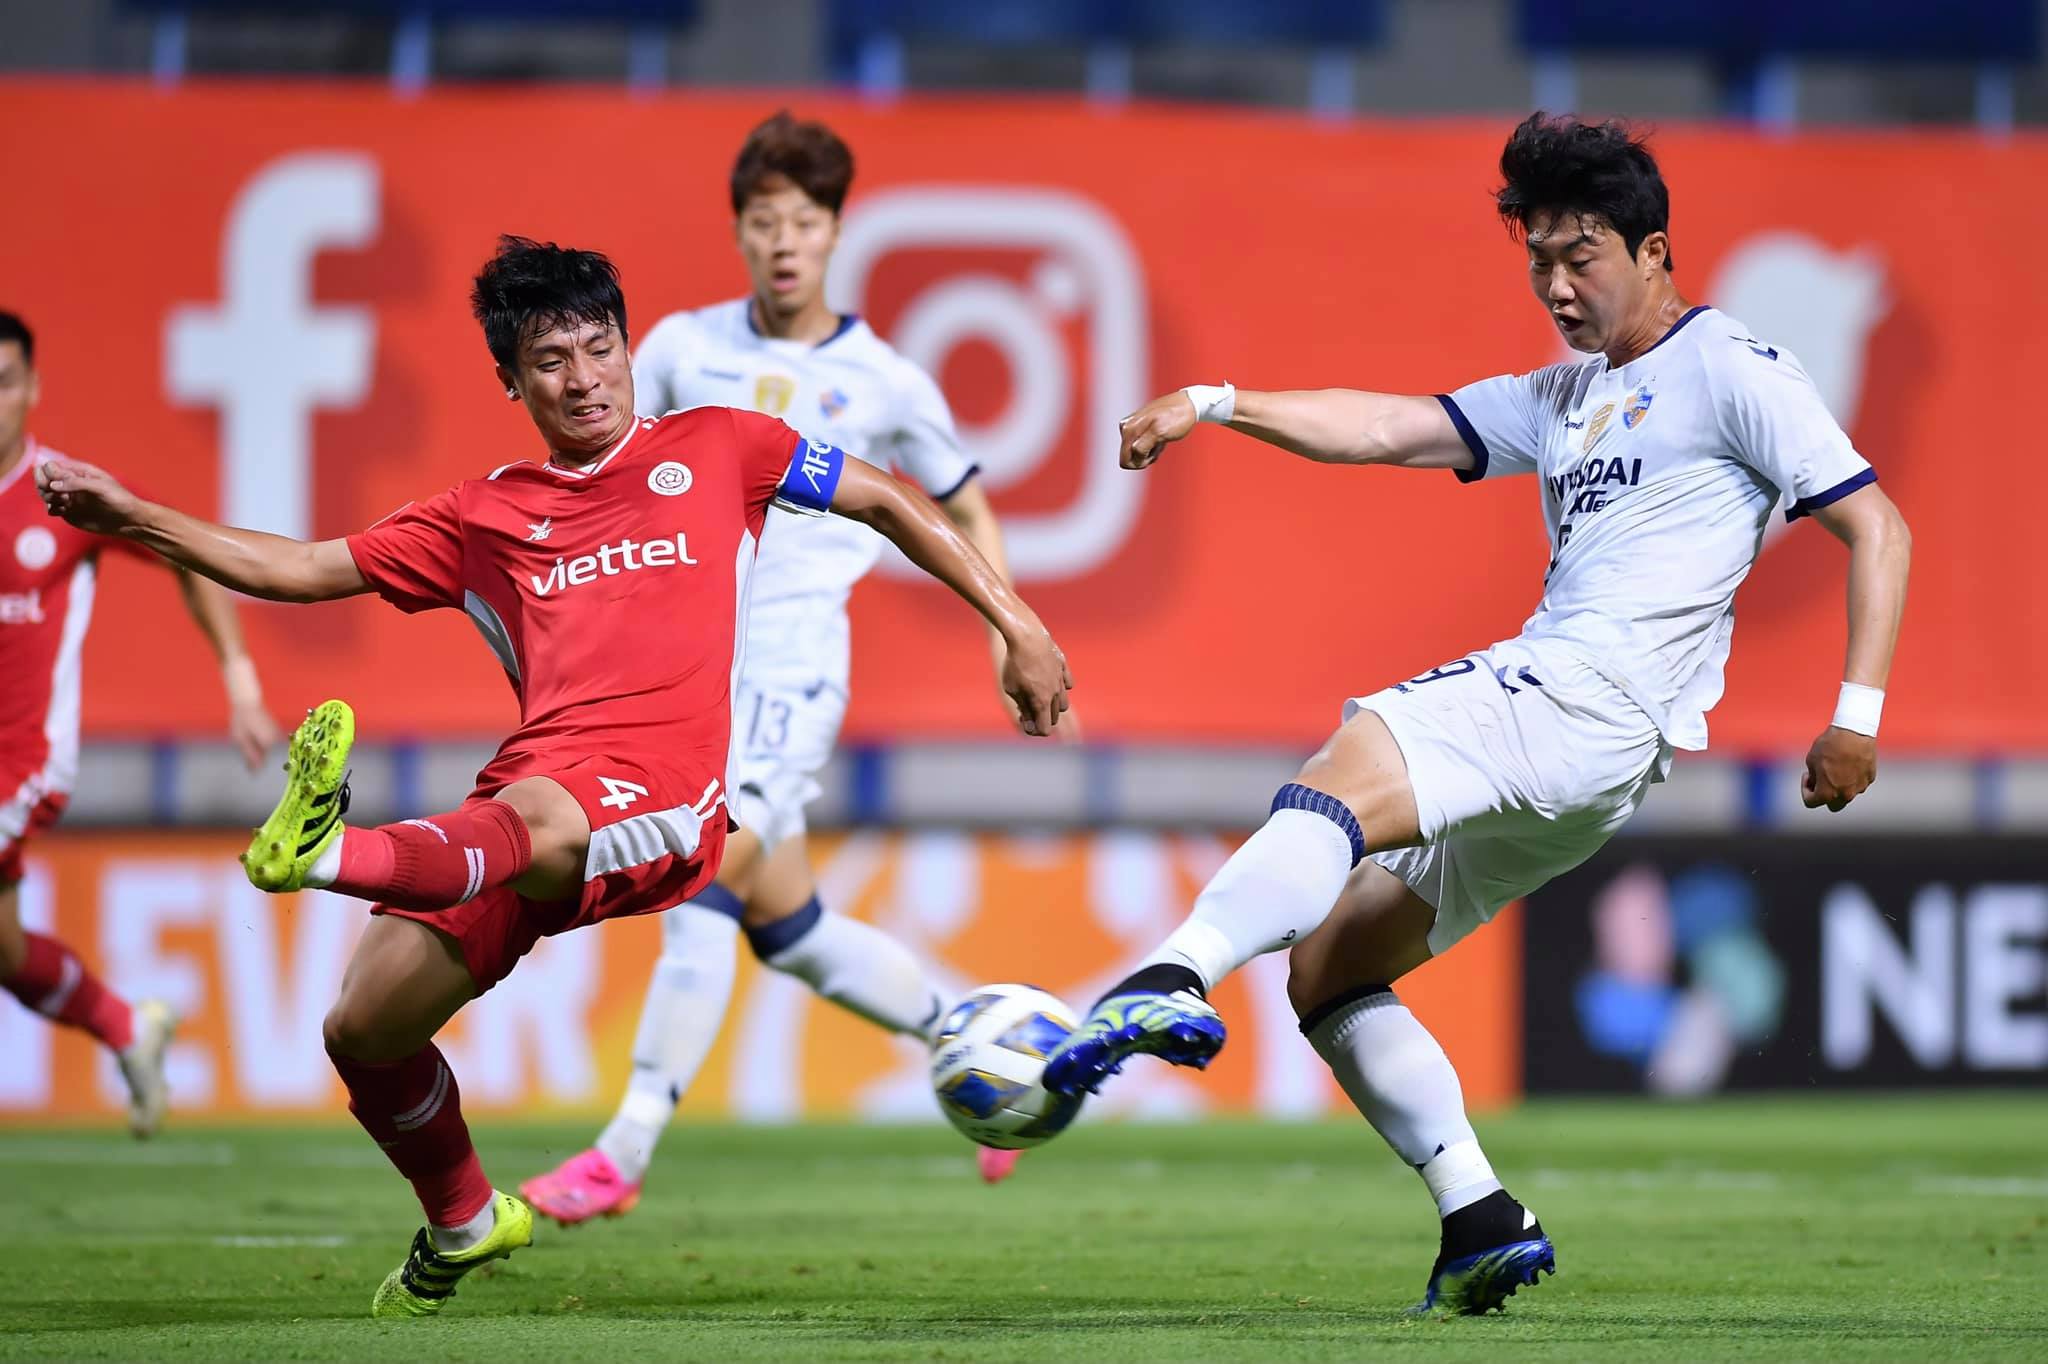 Chật vật trước 'ĐT Việt Nam thu nhỏ', ĐKVĐ Champions League châu Á bị báo Hàn Quốc mỉa mai